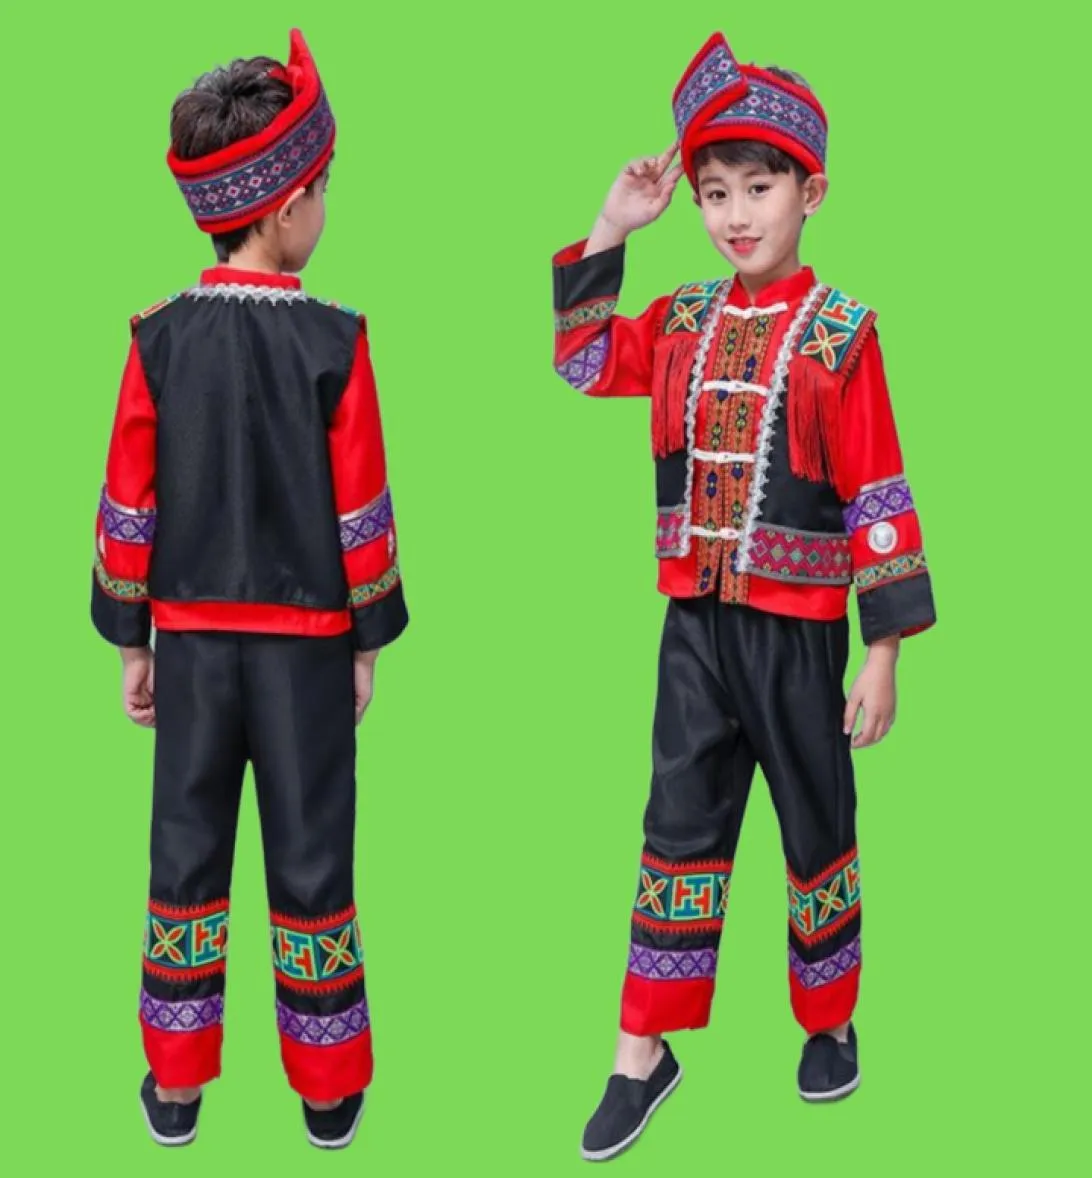 مرحلة ارتداء الأطفال الصينية الصينية Hmong Miao Costume Boys Print Folk Hanfu Dress Dress Setting Performance Performance Festival Performance Wers4515712